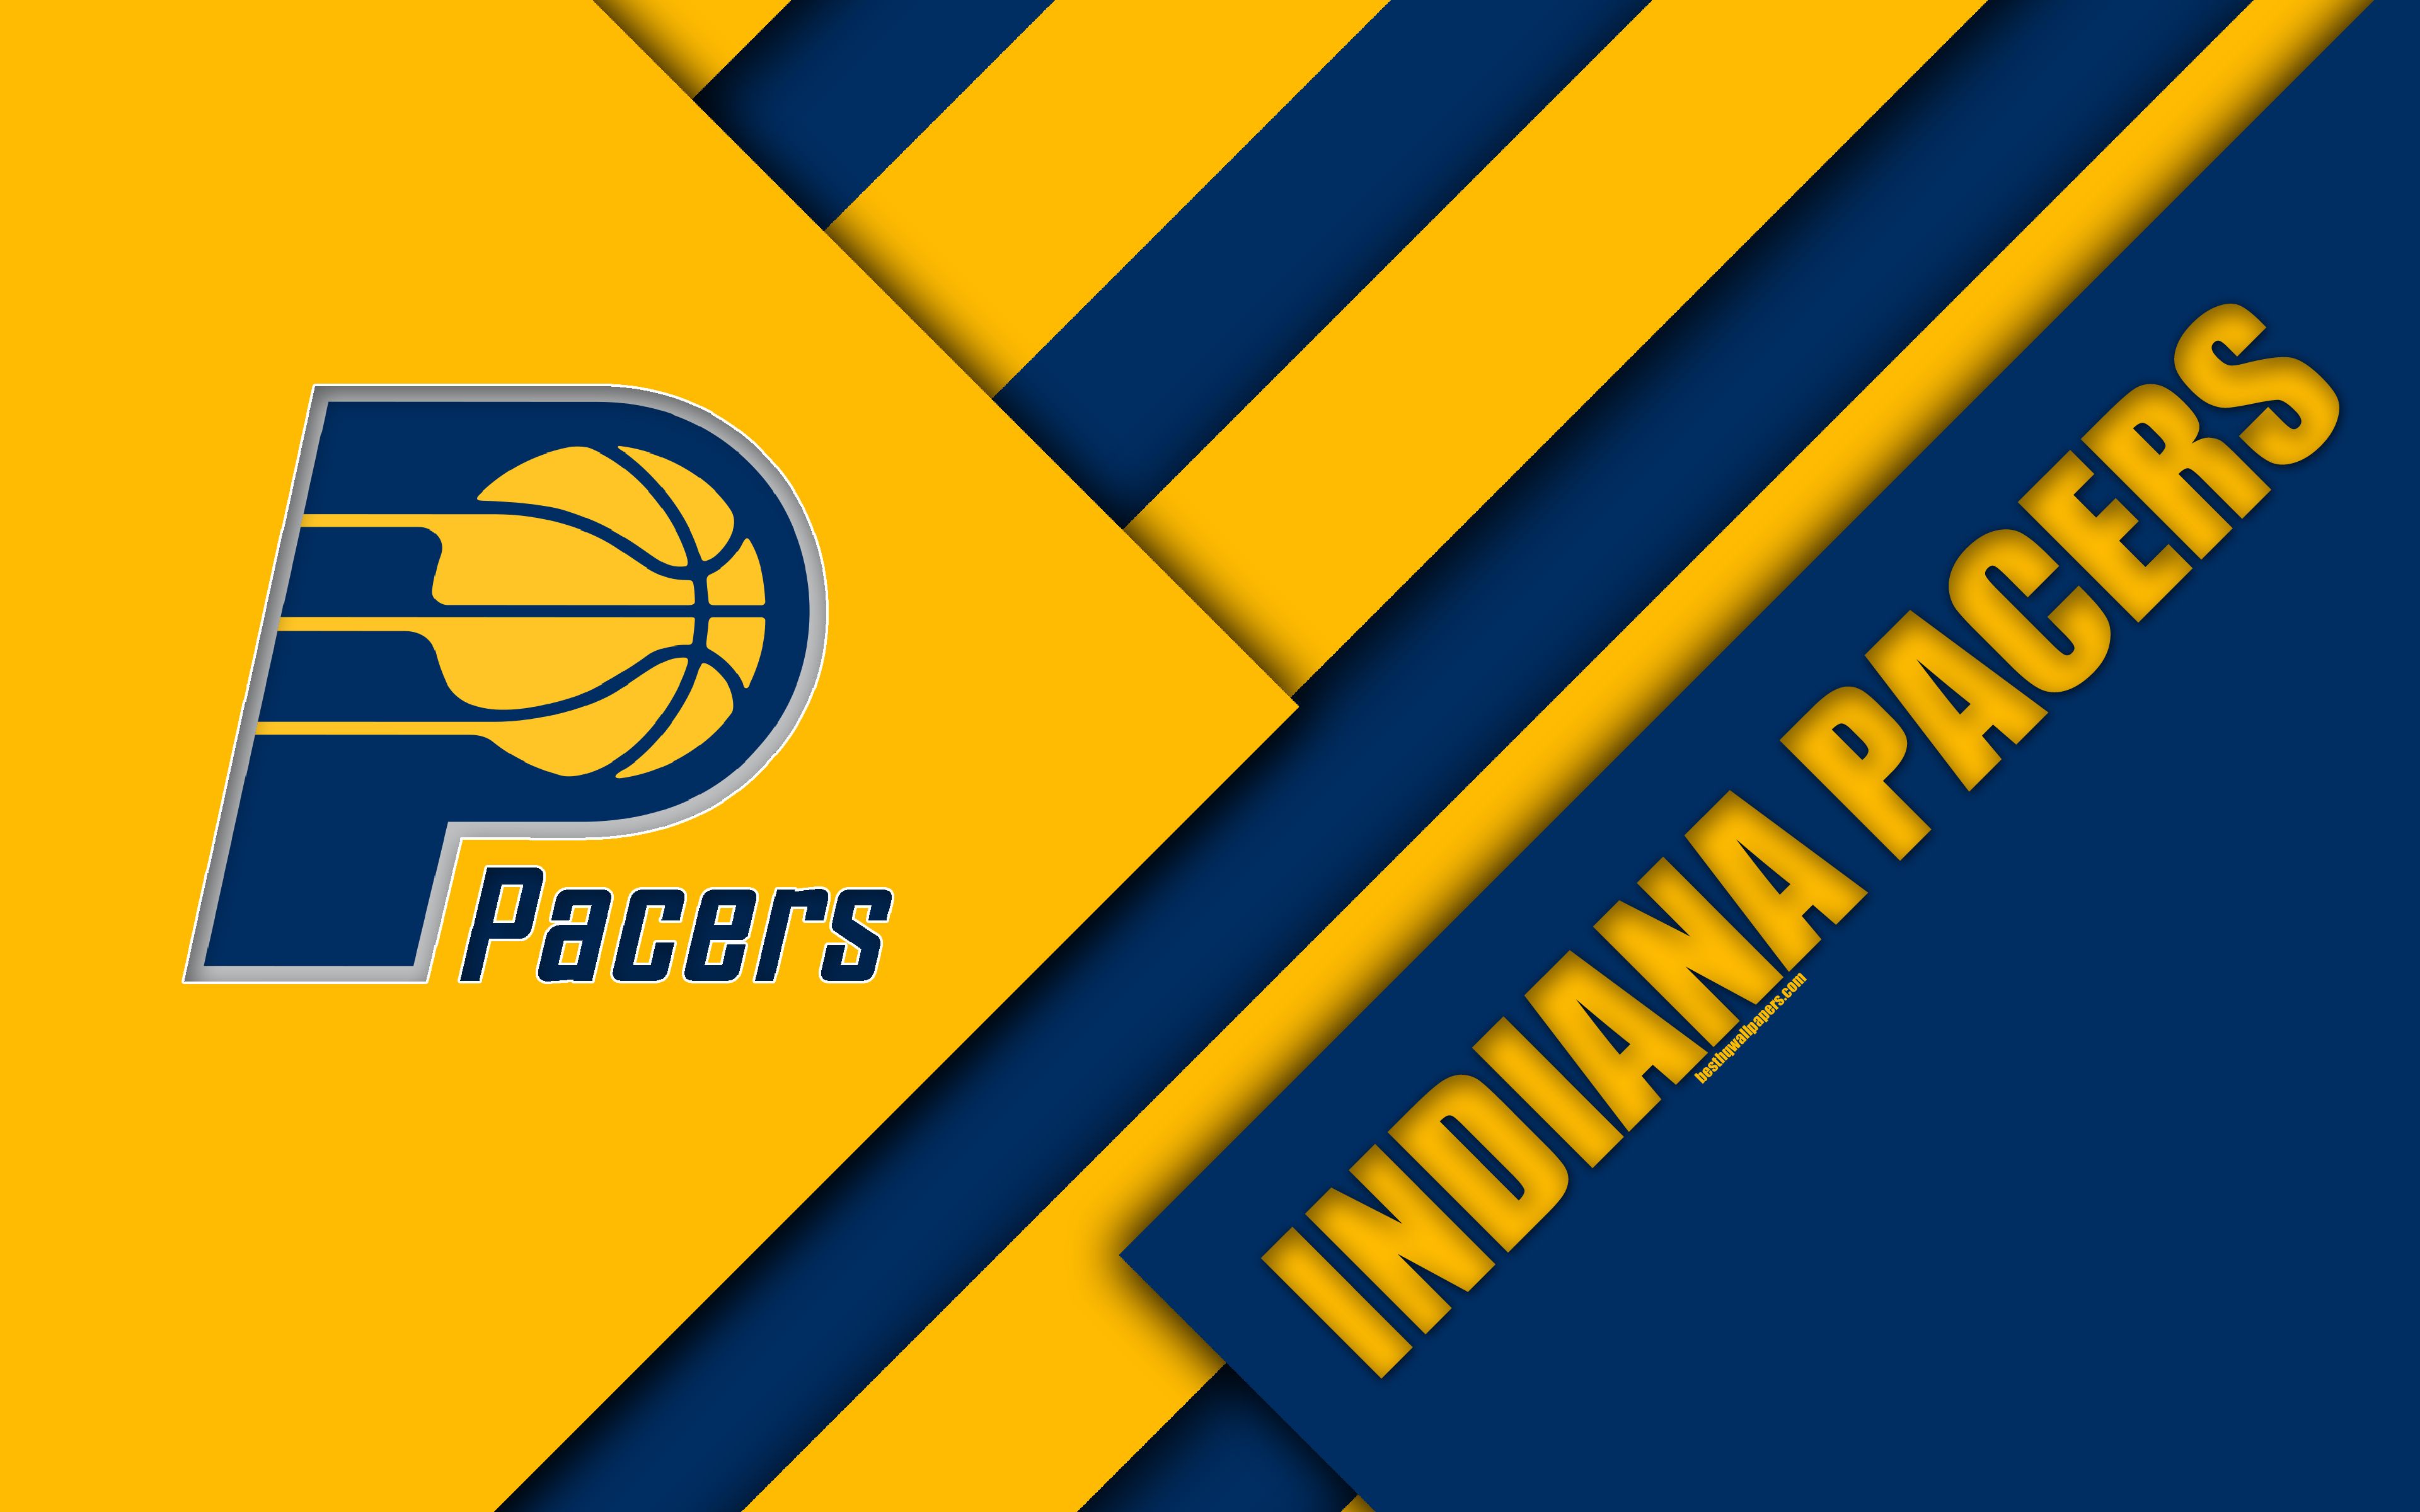 Download wallpaper Indiana Pacers, NBA, 4k, logo, material design